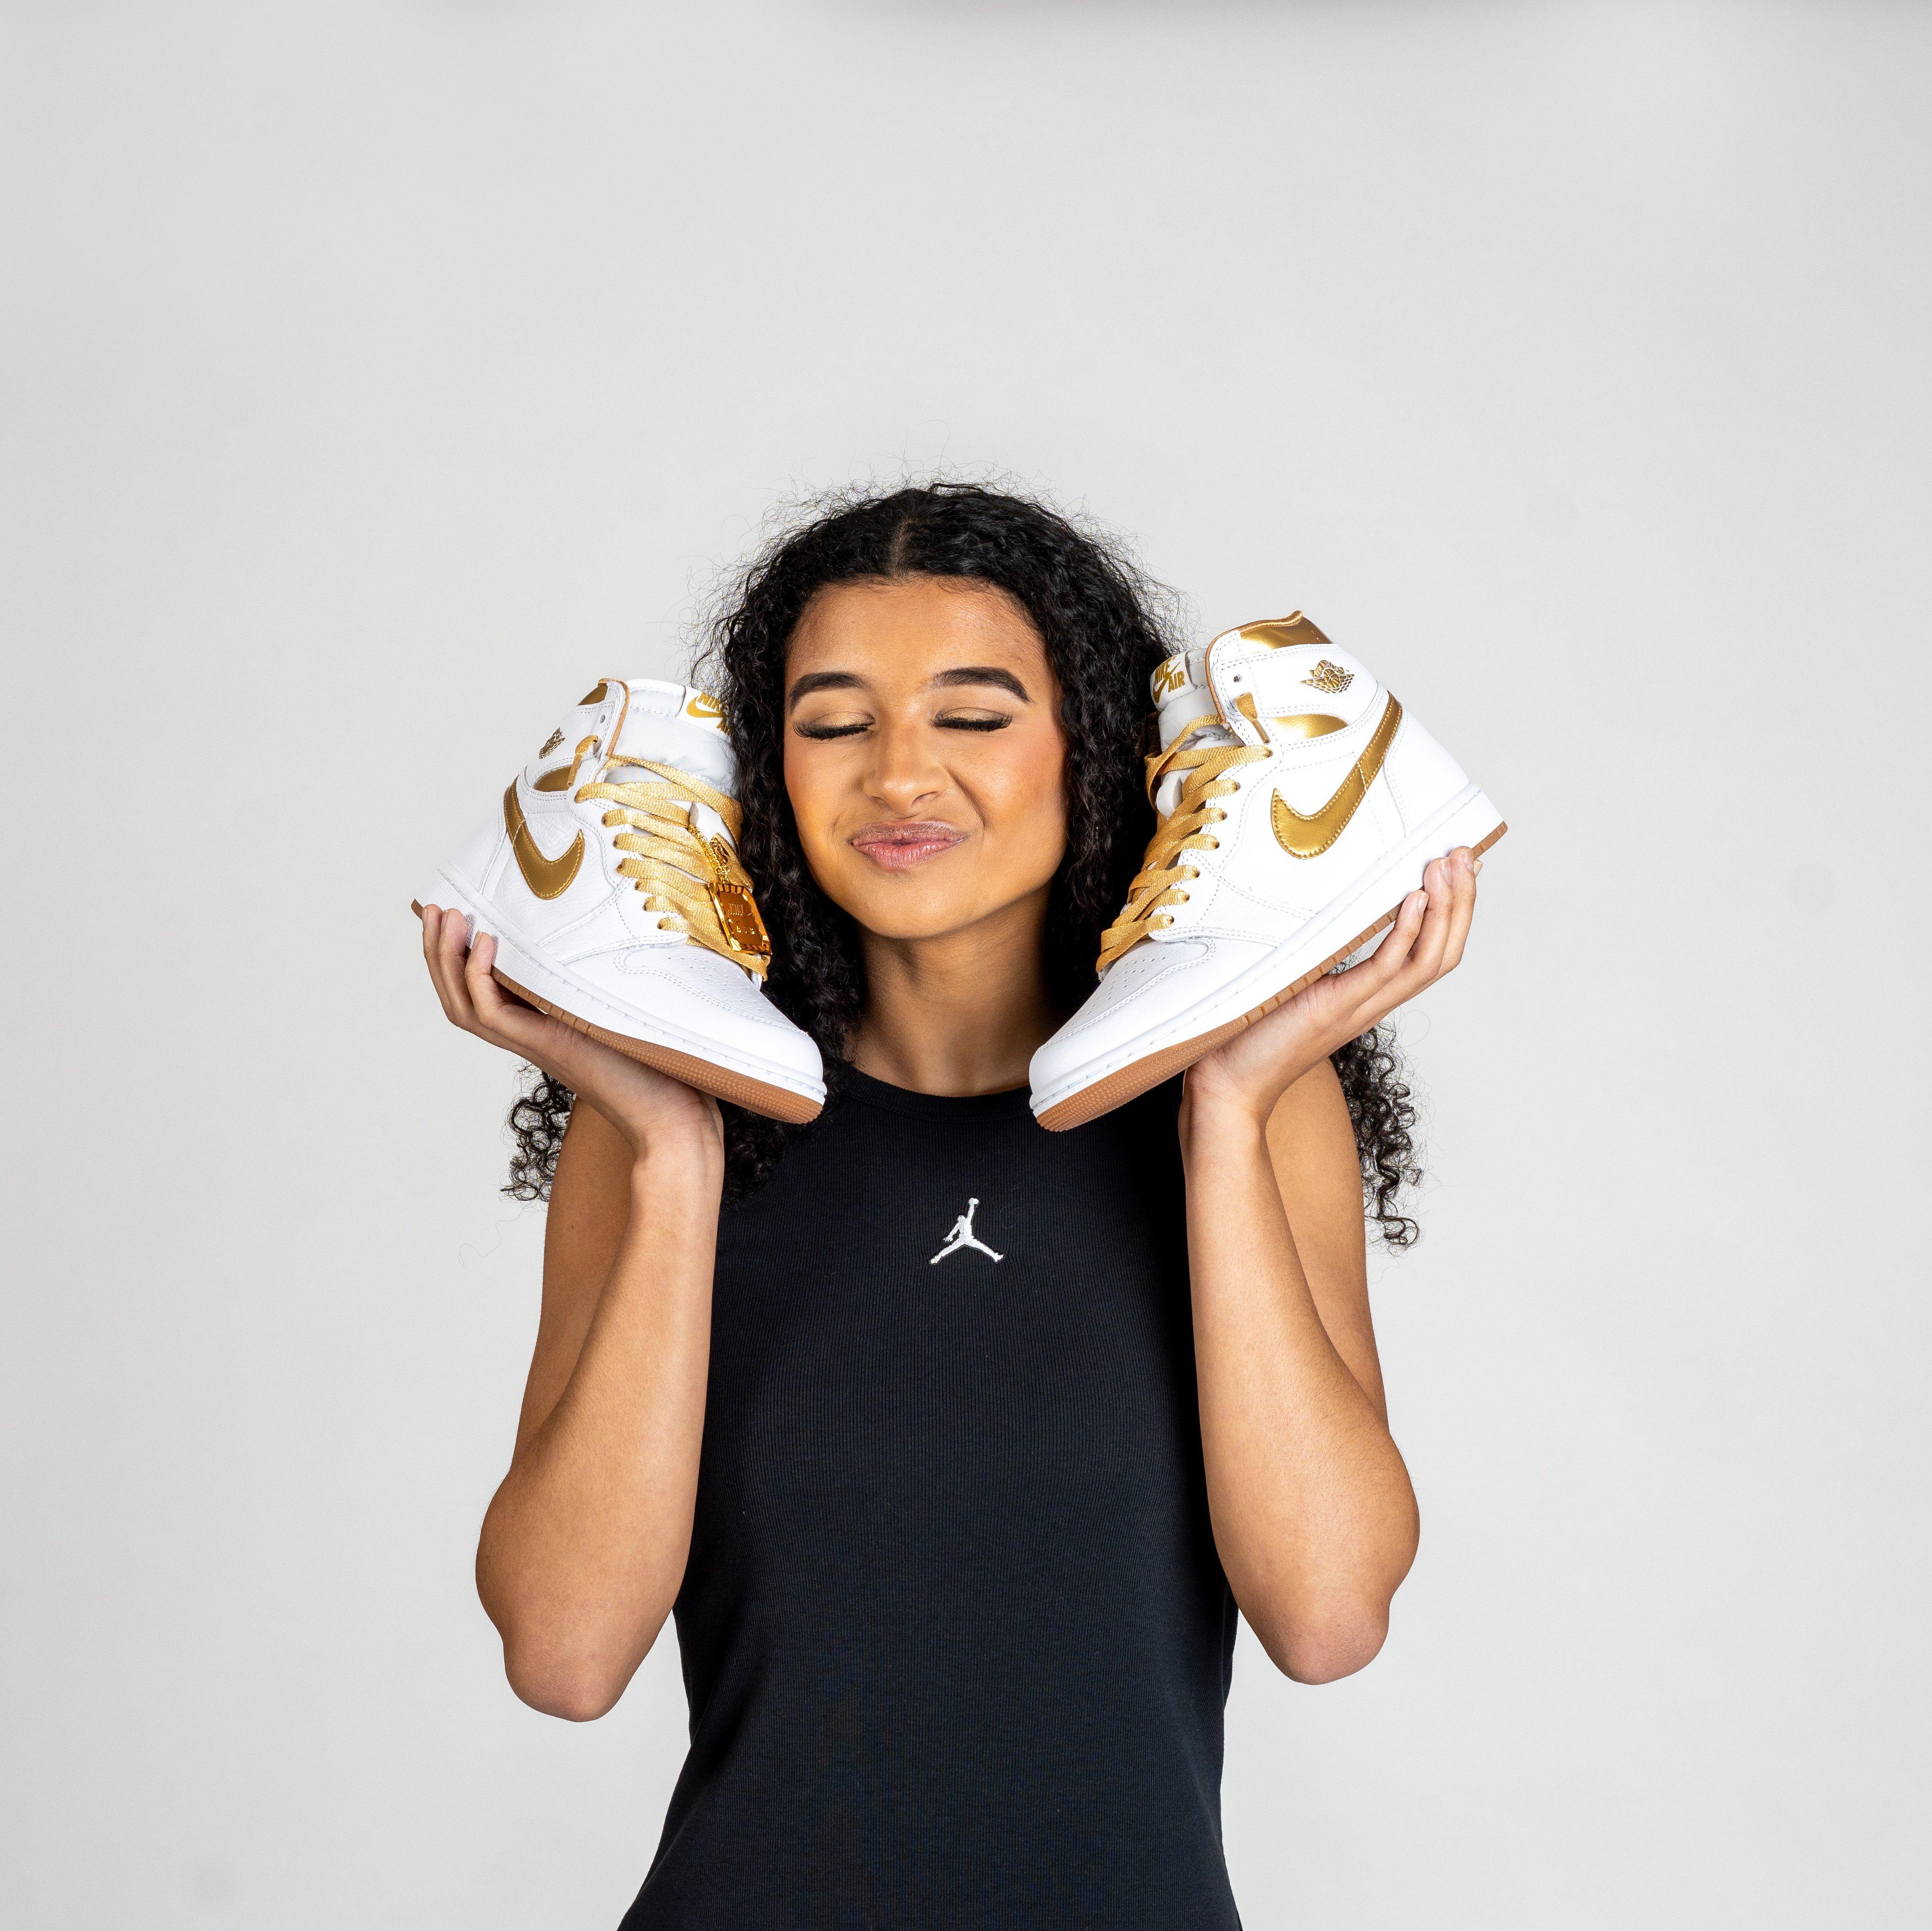 Air Jordan 1 Retro High OG White and Gold Women's Shoes.